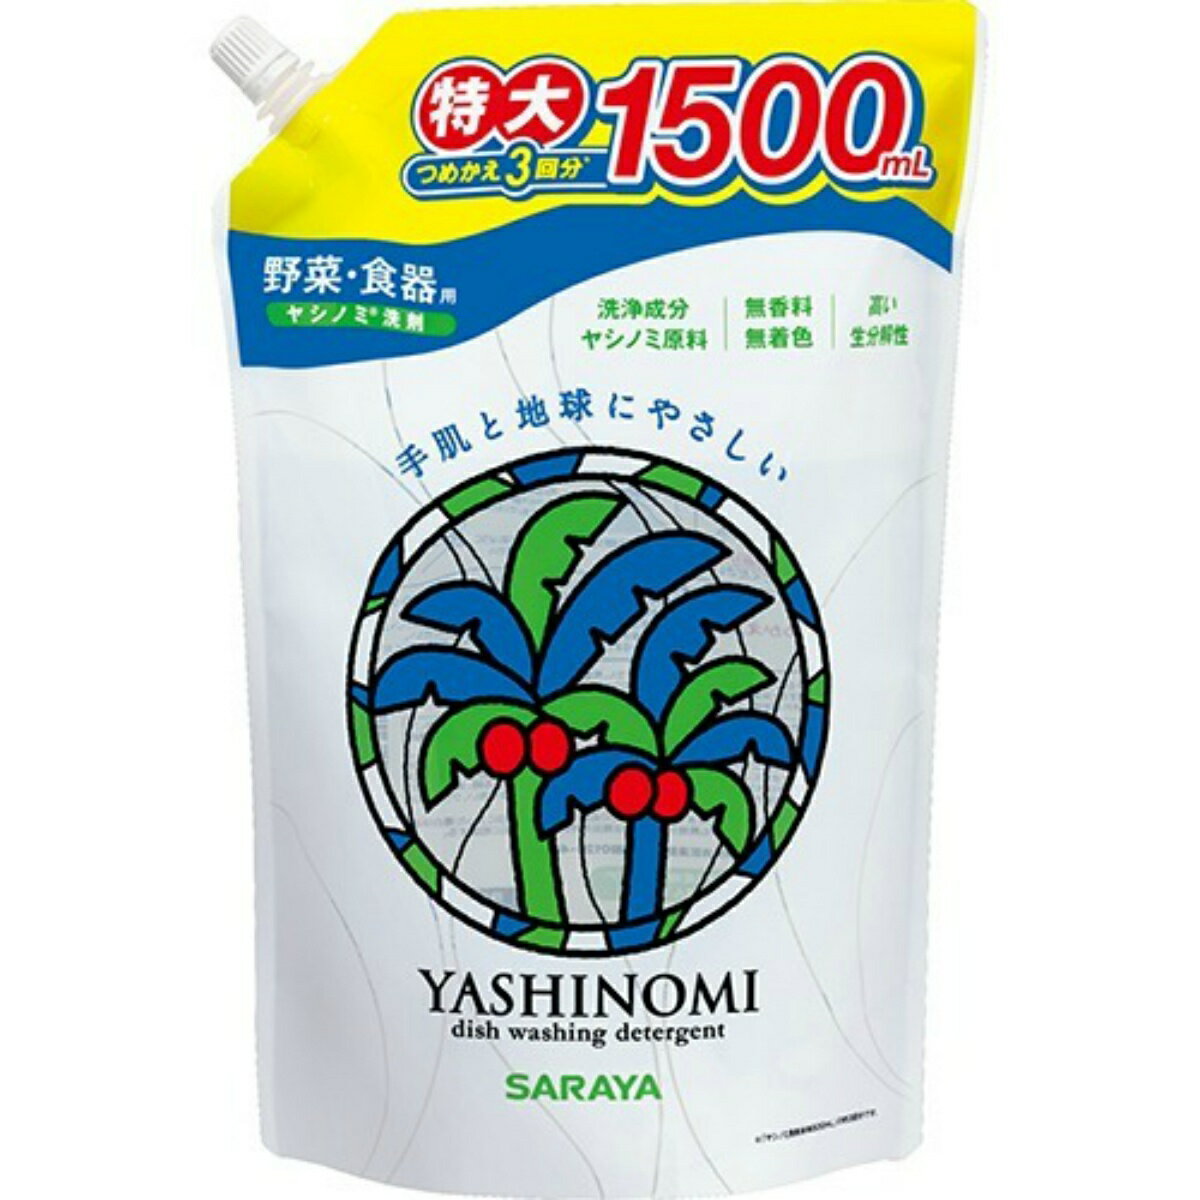 サラヤ ヤシノミ洗剤 3回分詰替(内容量:1500ml) 1